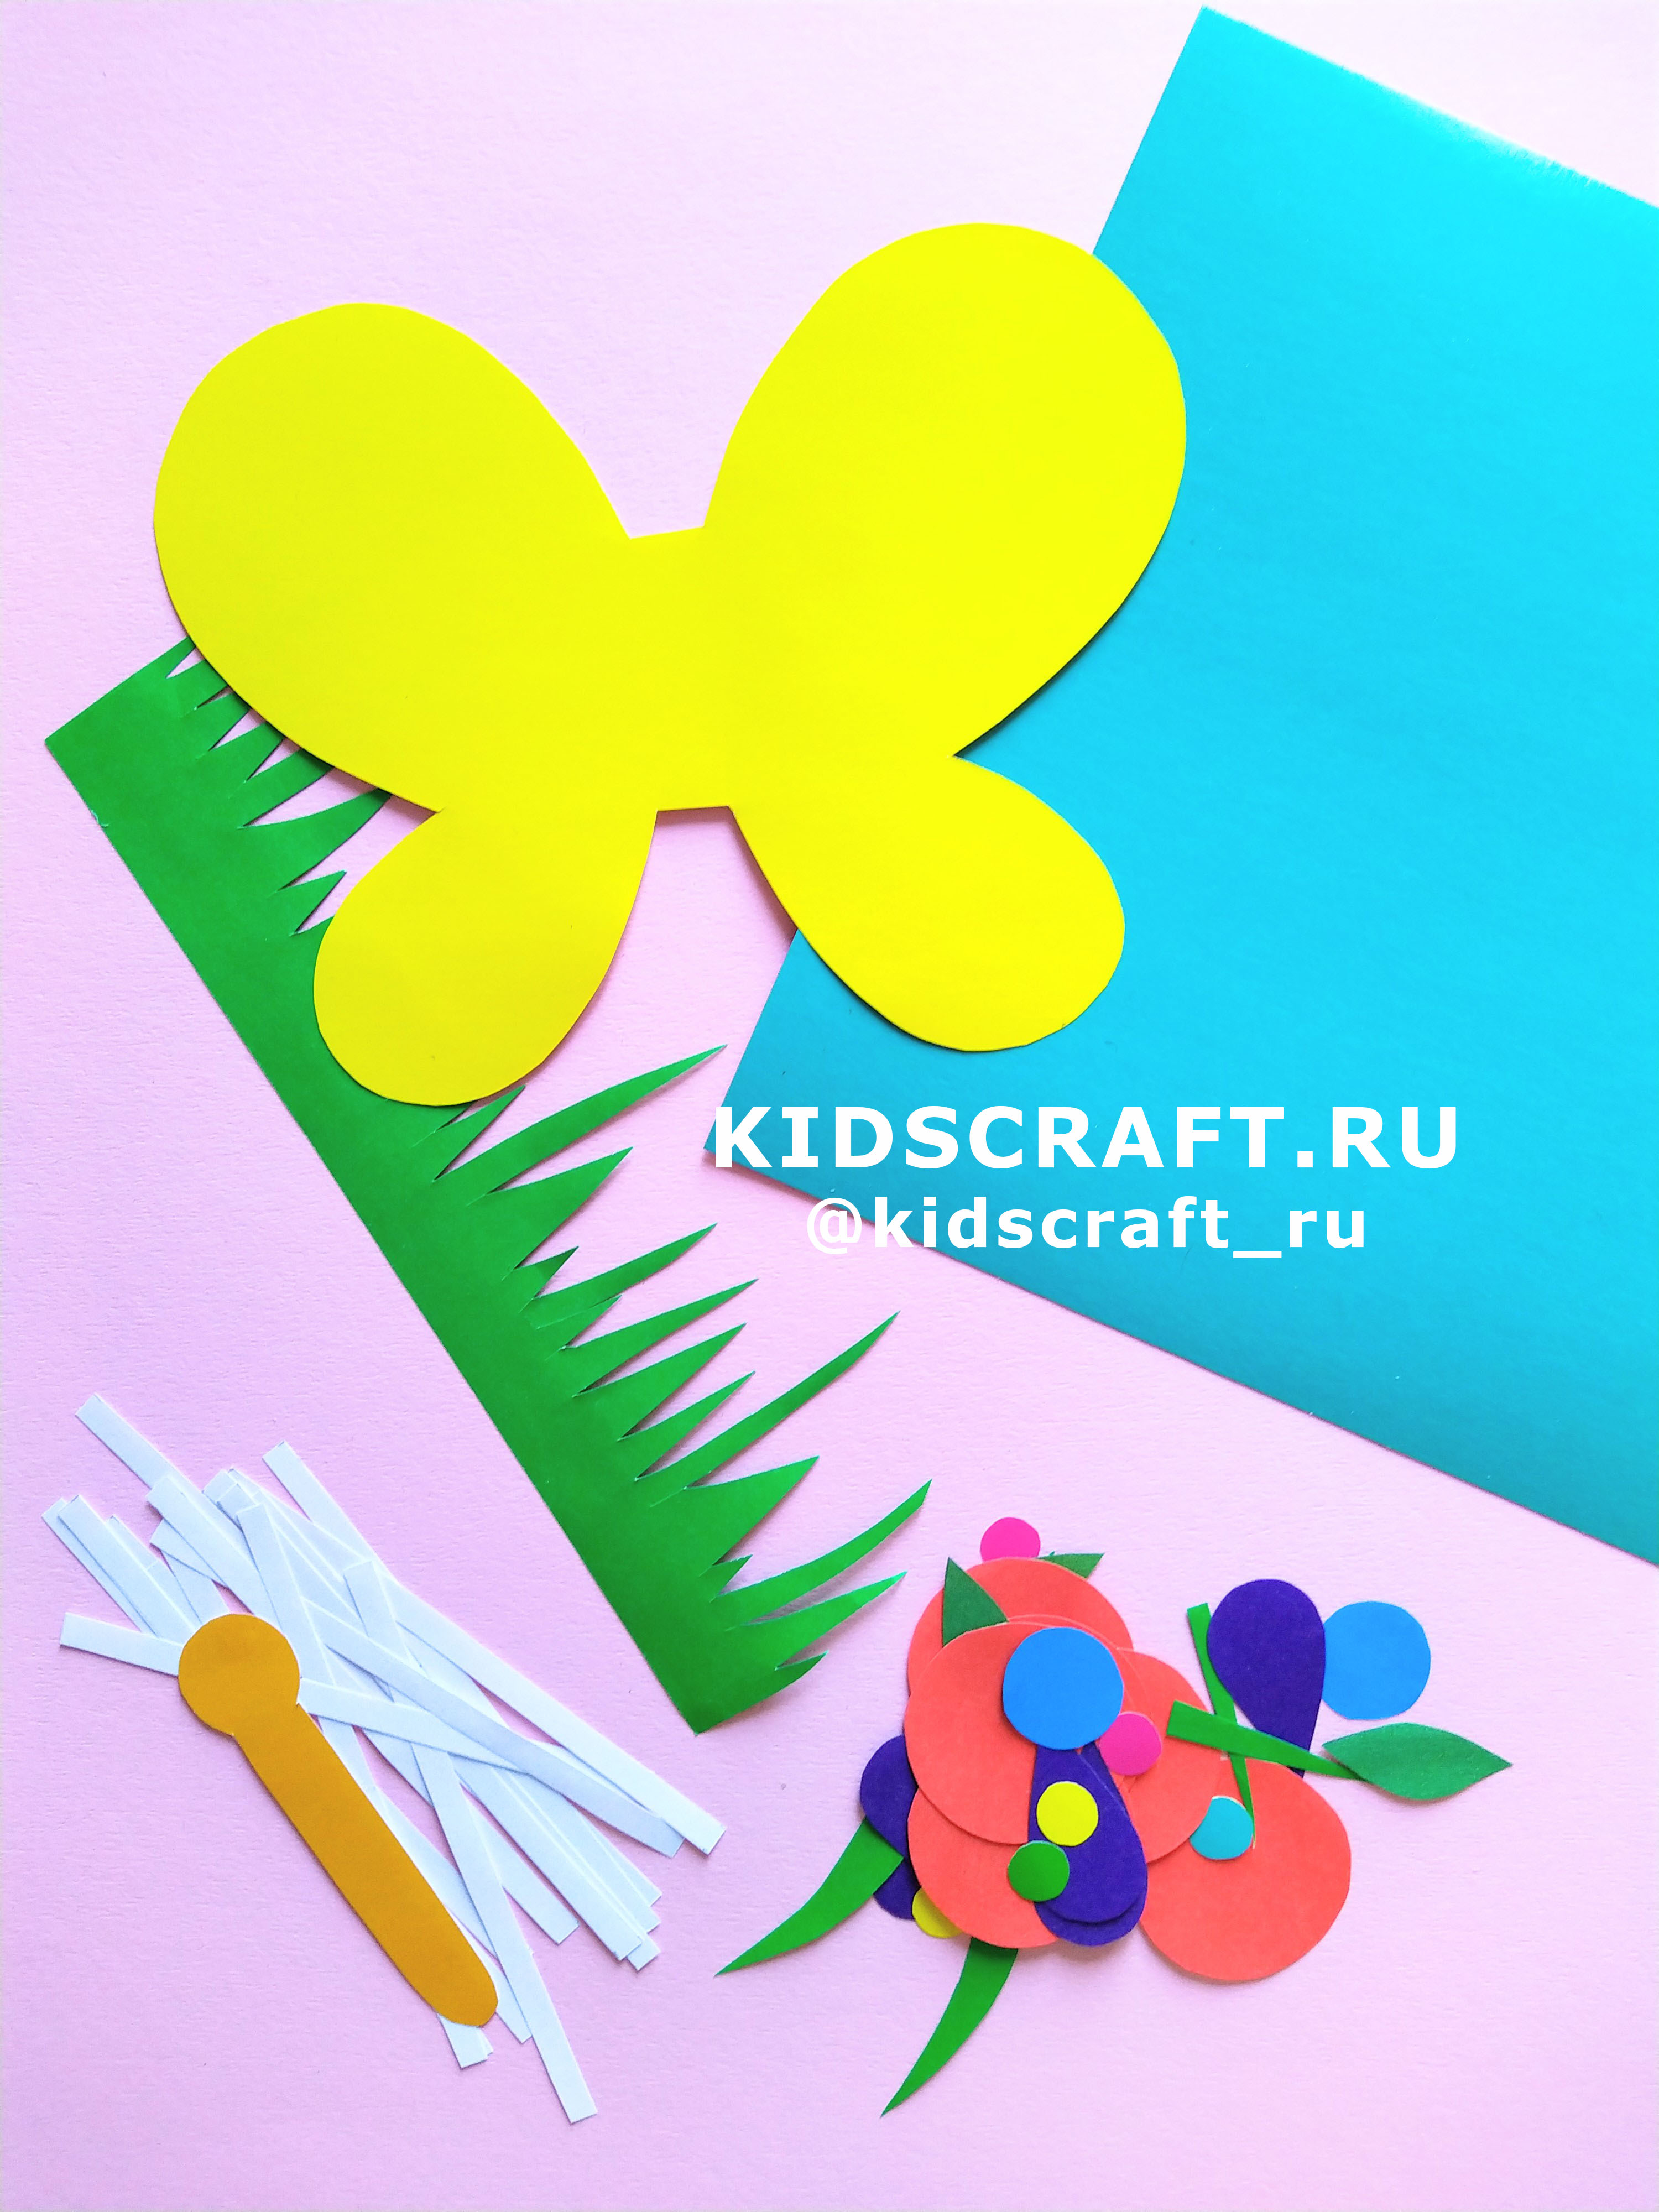 Как сделать поделки своими руками kidscraft.ru